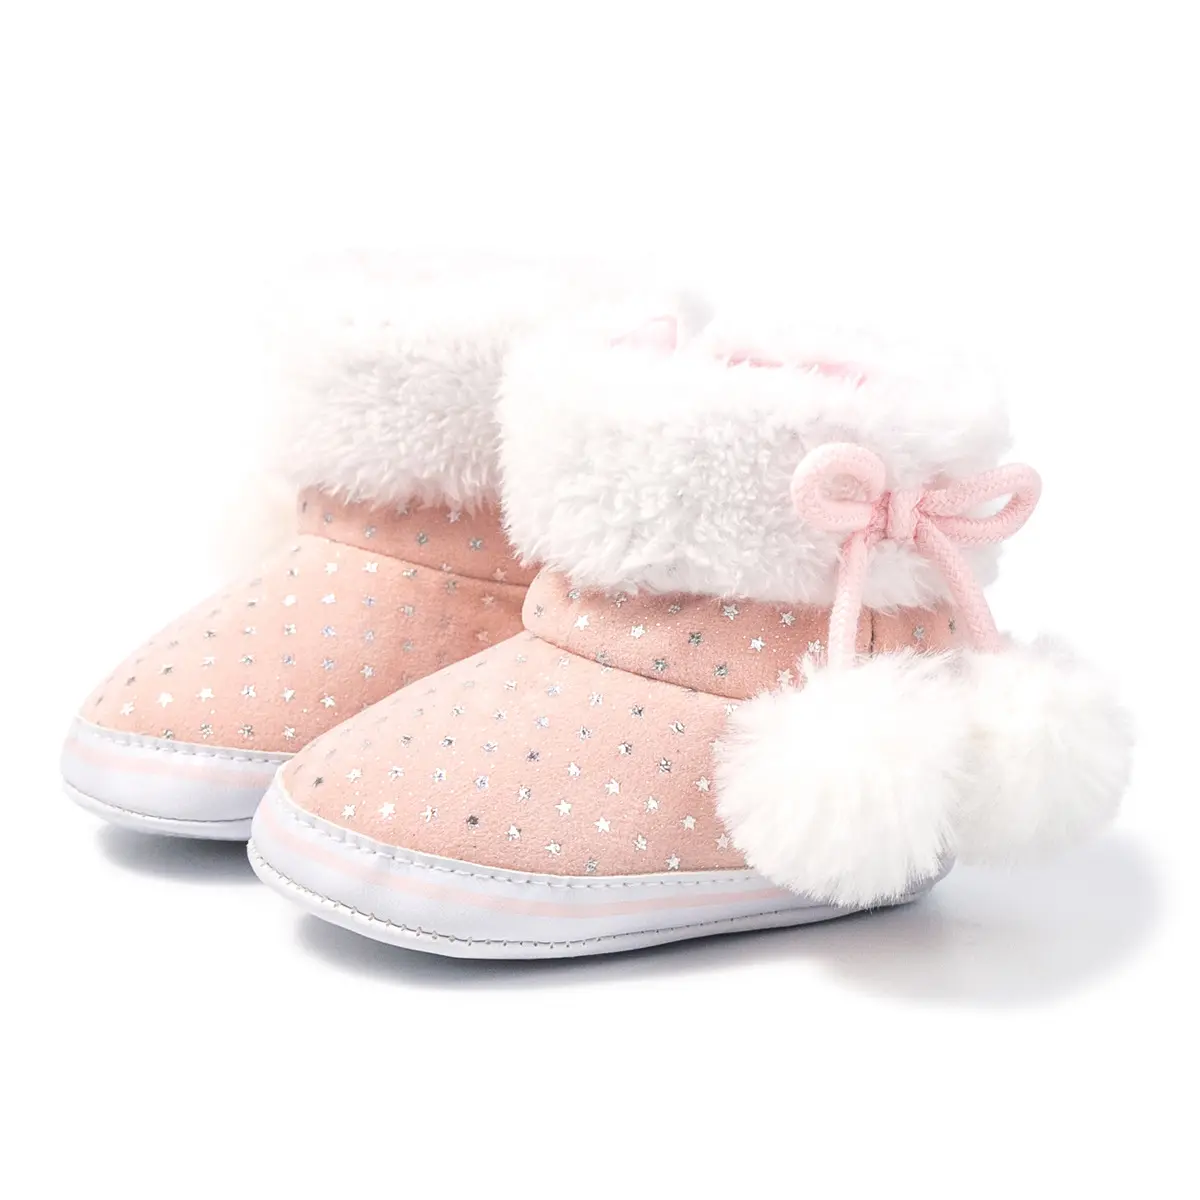 Botines de tela de algodón para bebés, calzado para mantener el calor, botines para bebés, para invierno, 2021